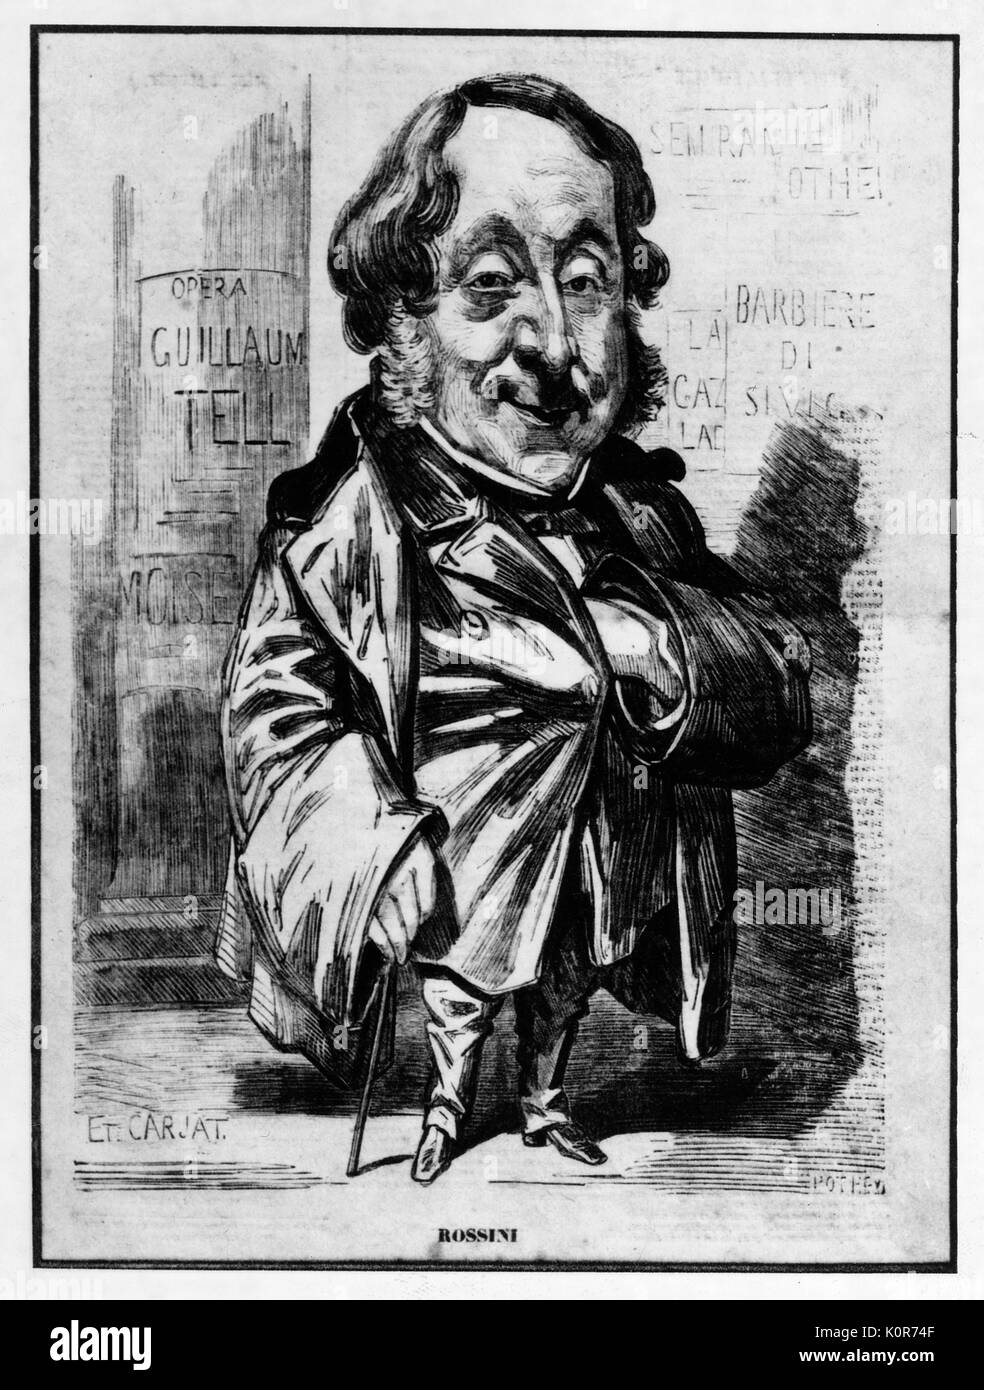 Gioacchino Rossini A. Karikatur von E. Carjat. Italienischer Komponist. 29 Februar 1792 - 13. November 1868. Reklametafeln mit Namen seiner Opern hinter ihm - erfolgreiche Oper Schriftsteller. Stockfoto